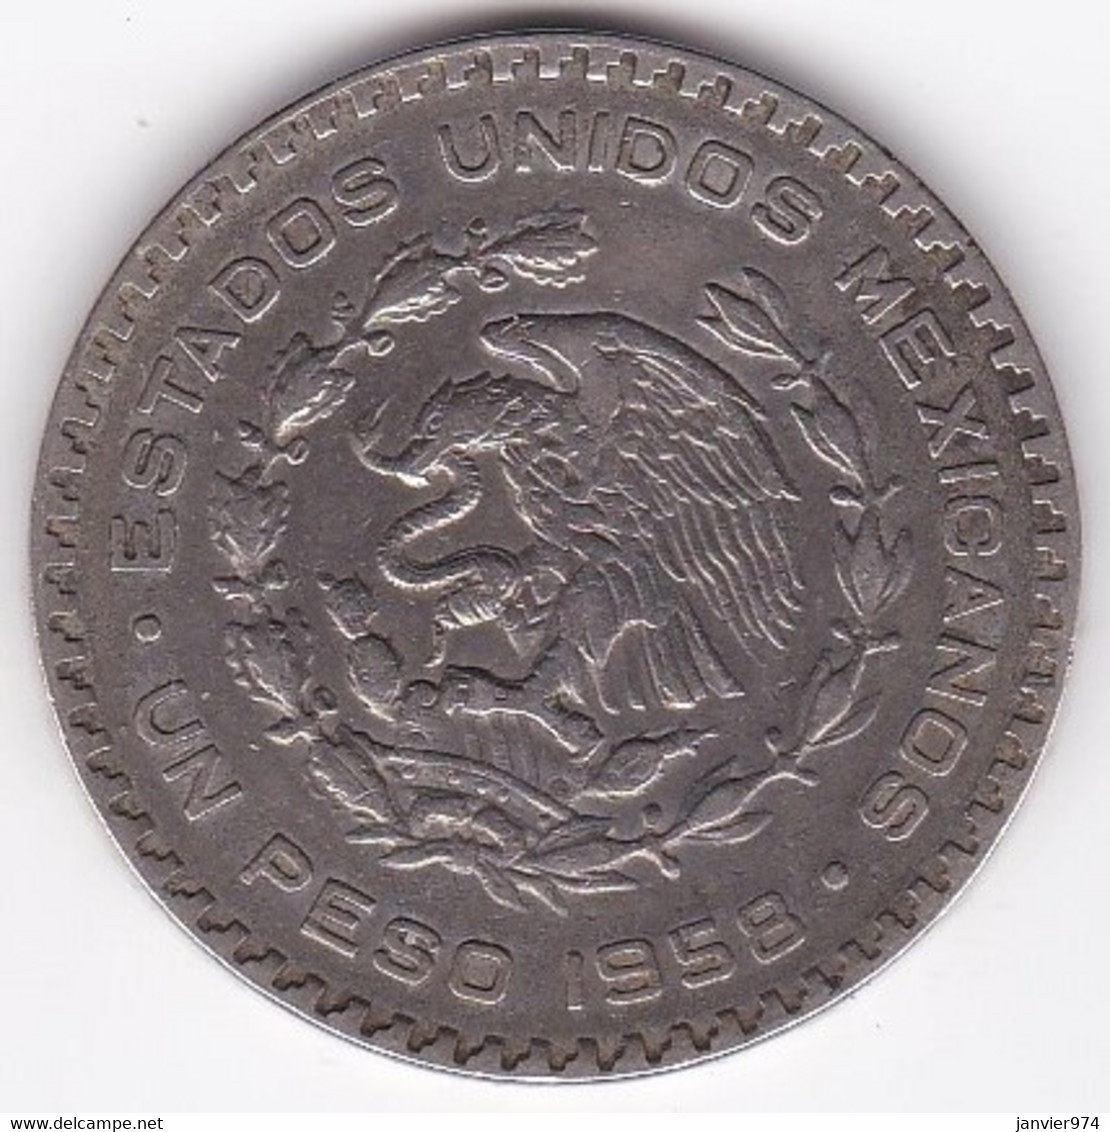 Mexique 1 Peso 1958, José María Morelos Y Pavón, En Argent, KM# 459 - Mexico